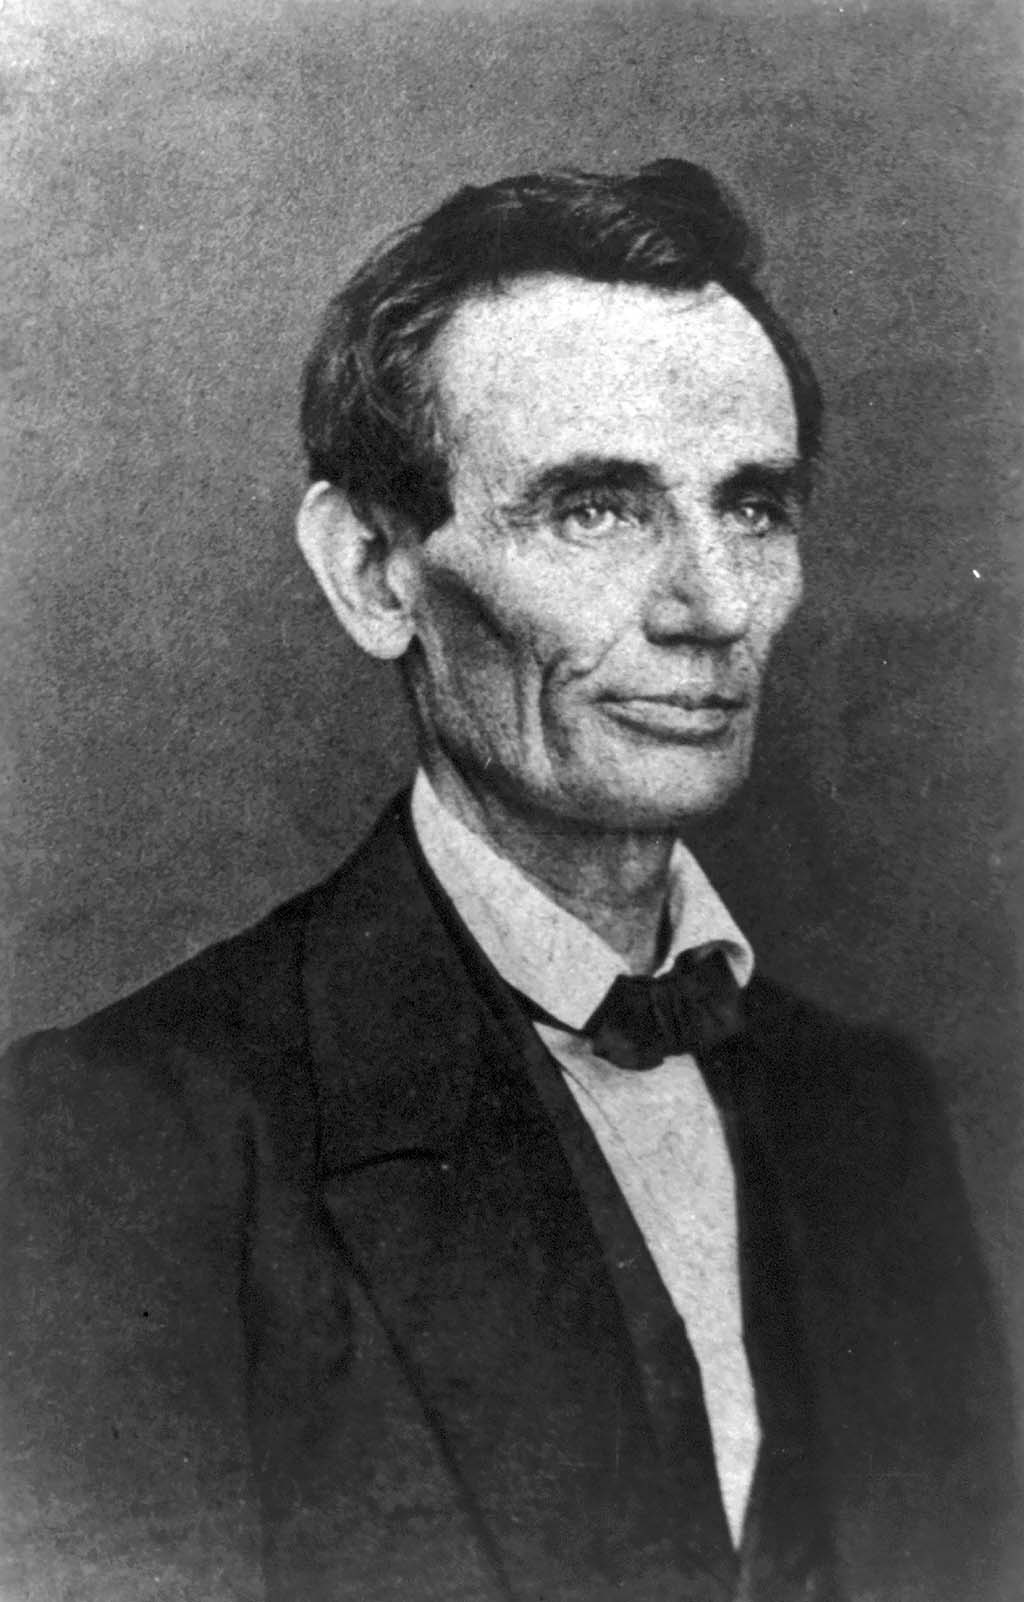 Lincoln essay